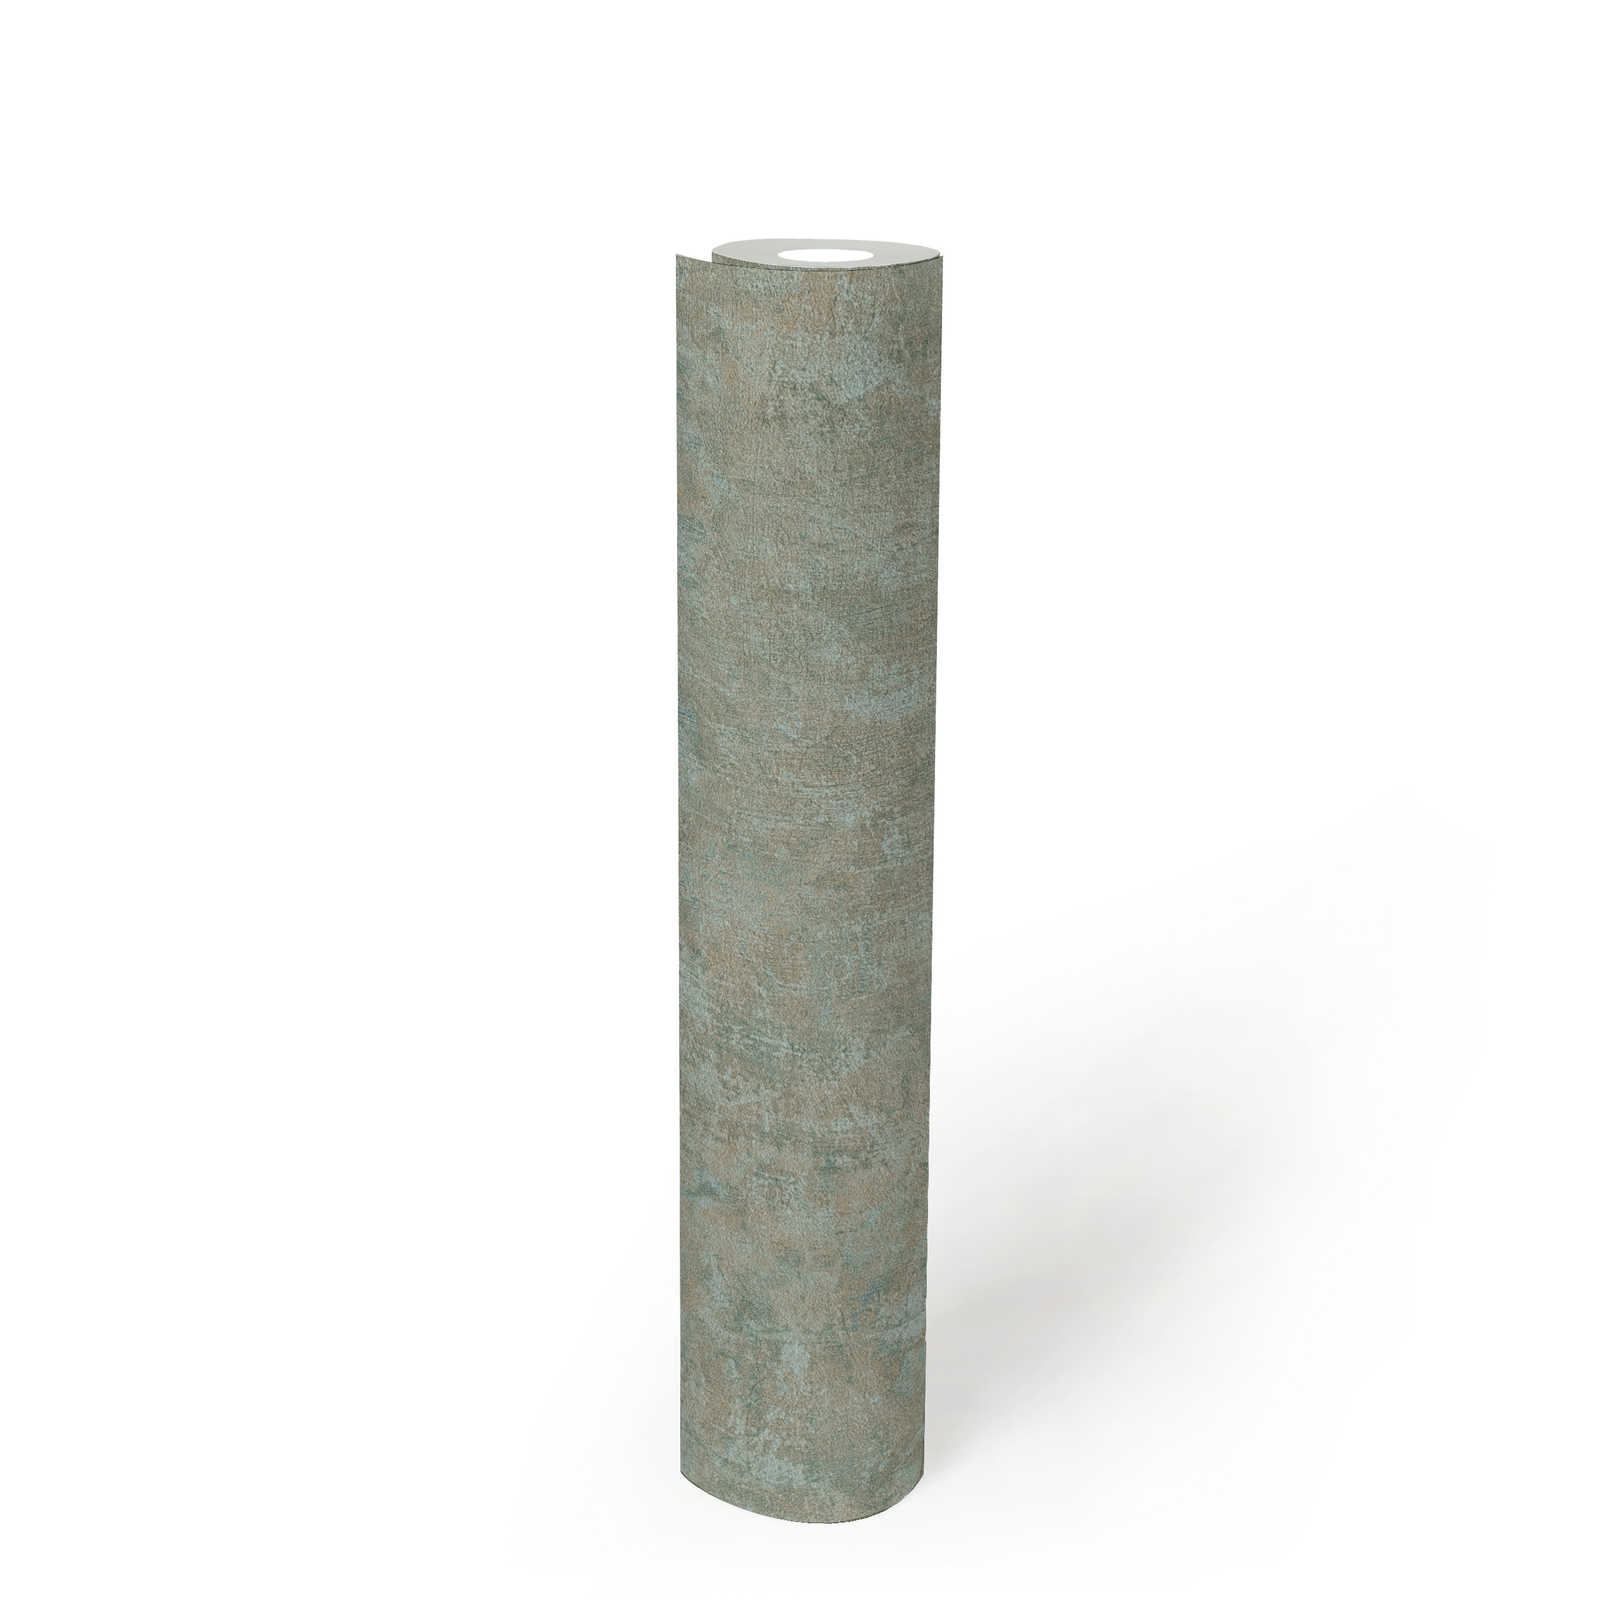             PVC-vrij vliesbehang met structuurlook - groen, blauw
        